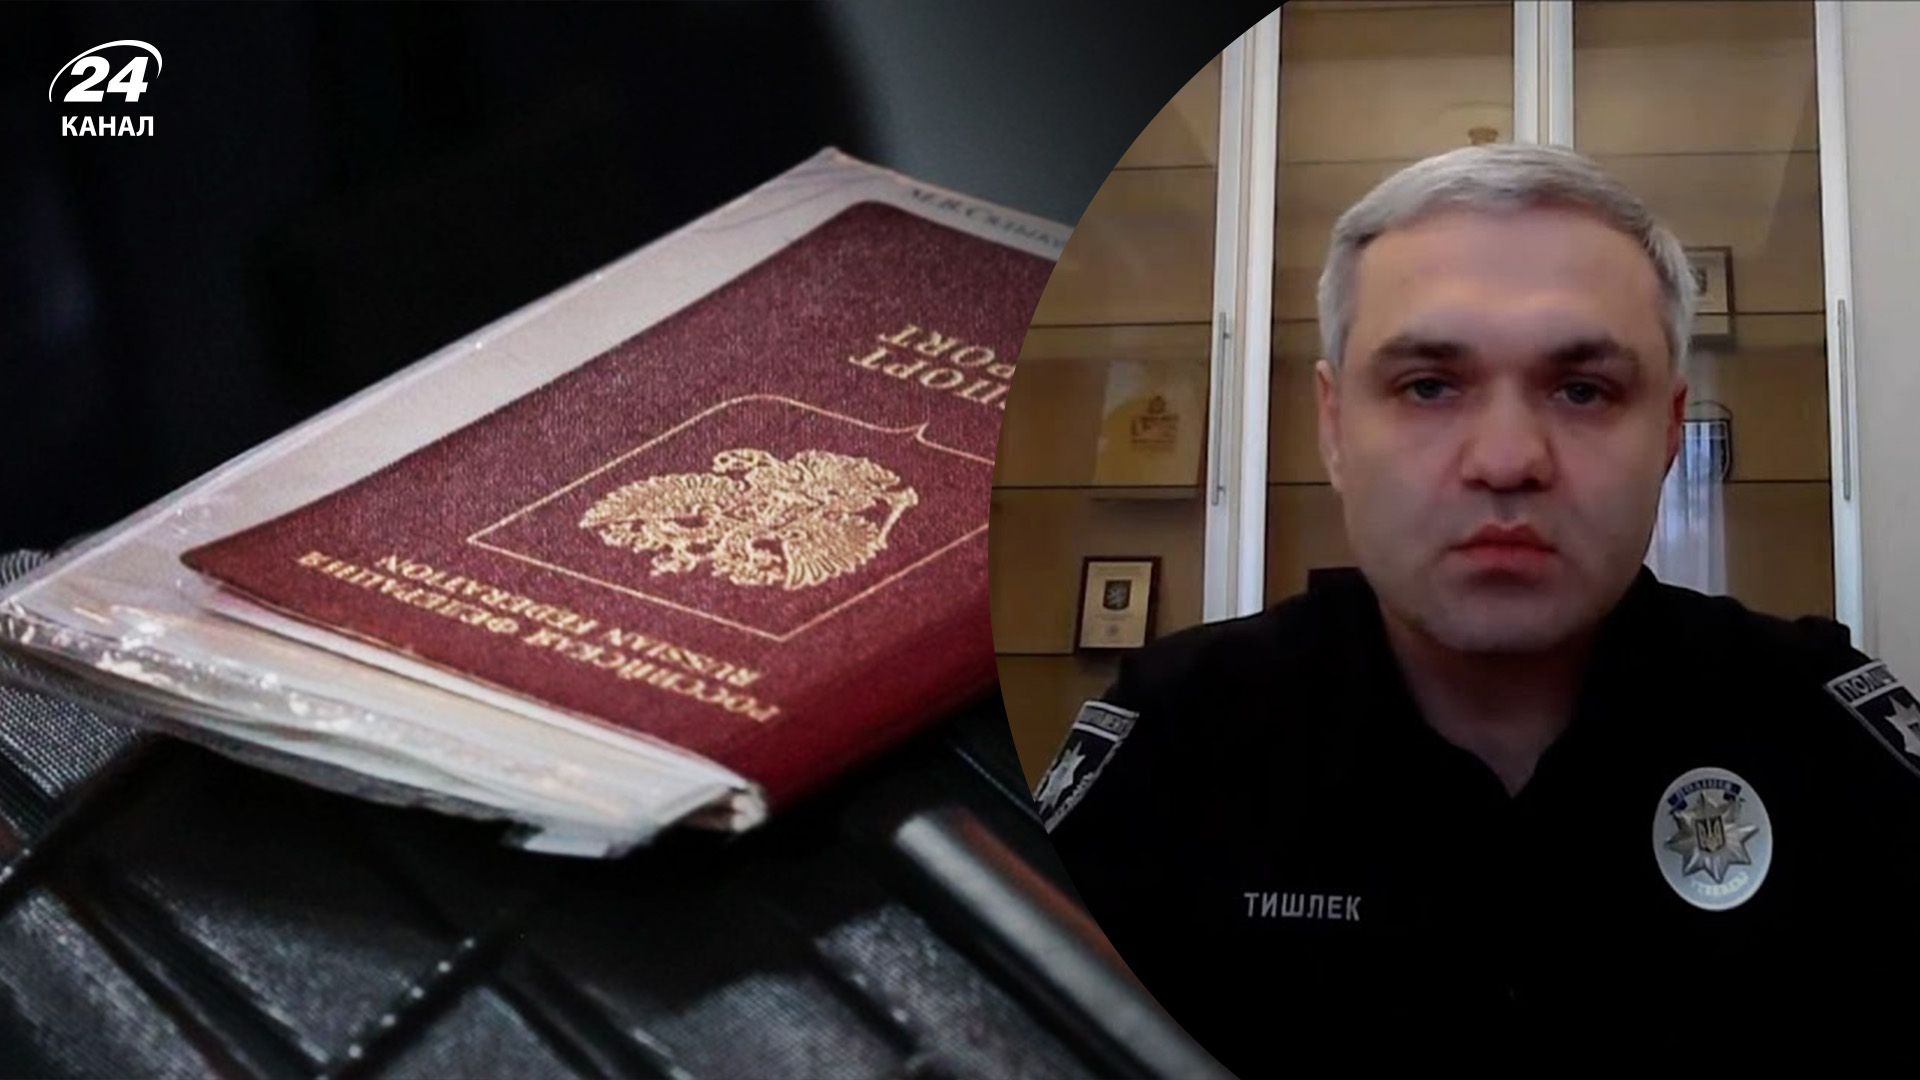 У дружини заступника голови Нацполіції є паспорт Росії - Тишлека перевіряє комісія МВС - 24 Канал